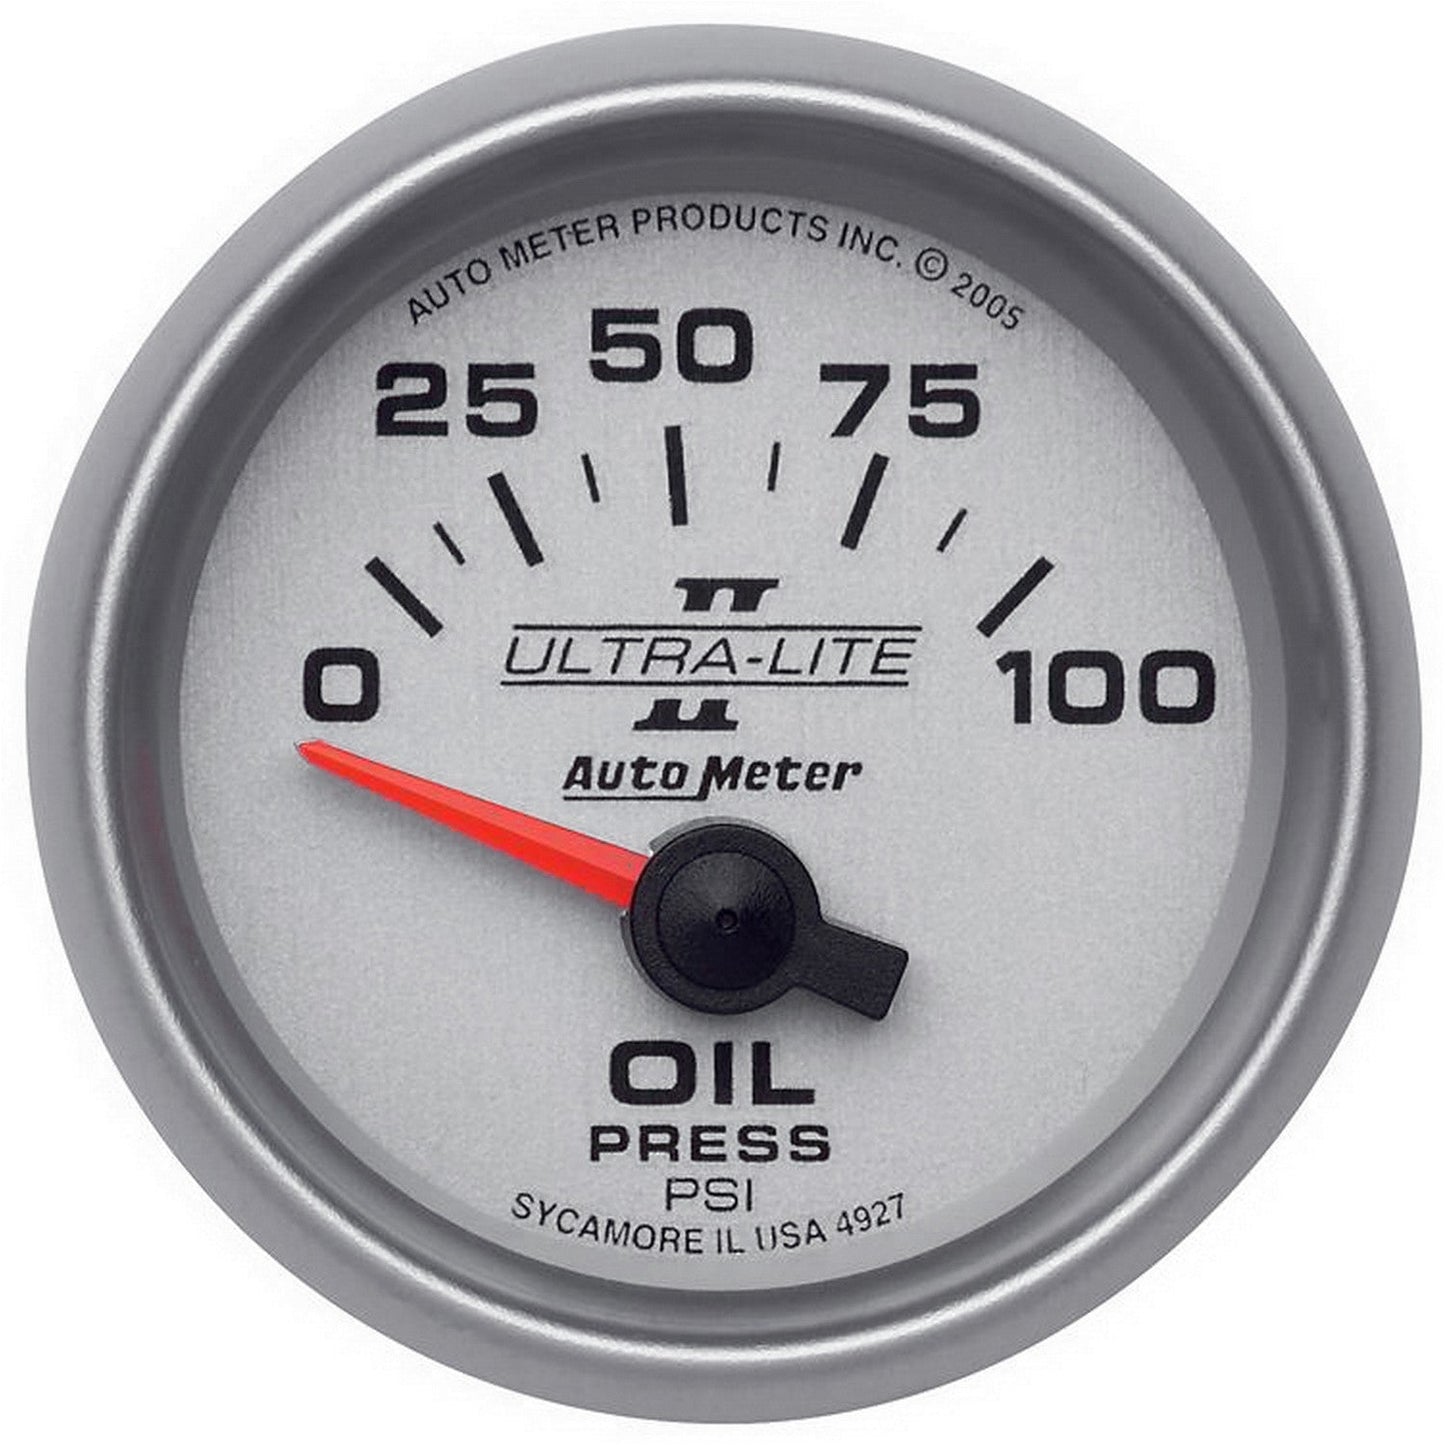 AutoMeter - 2-1/16" OIL PRESSURE, 0-100 PSI, AIR-CORE, ULTRA-LITE II (4927)